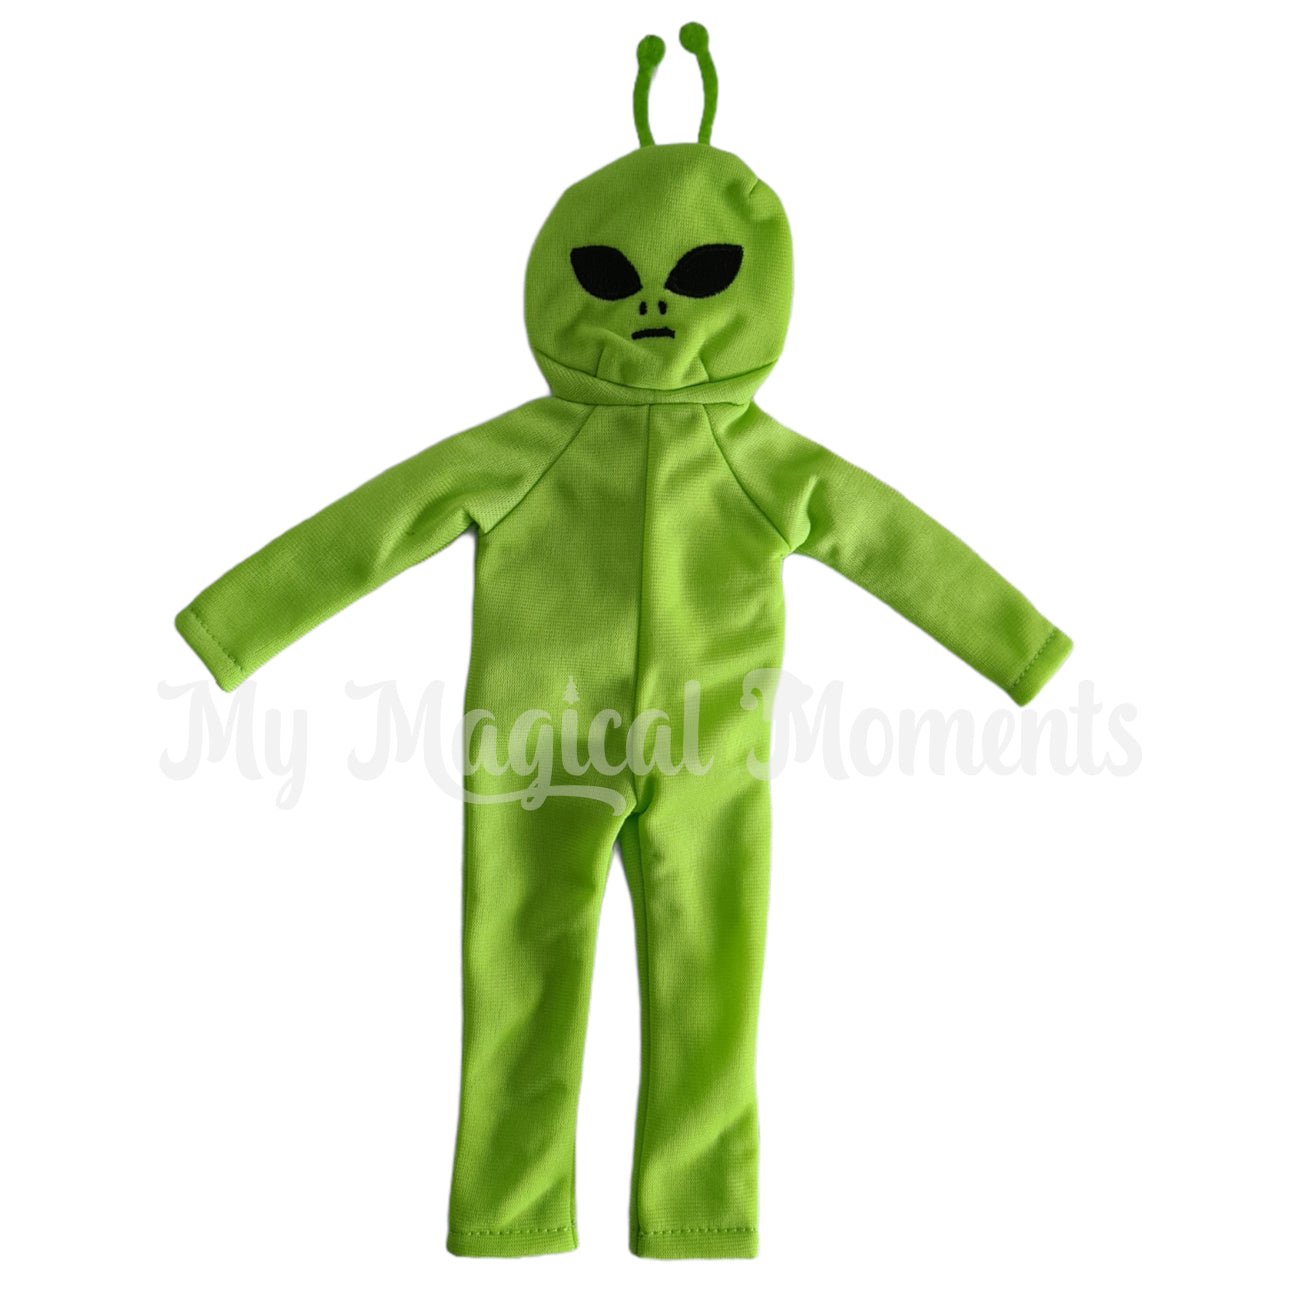 Green Alien elf costume